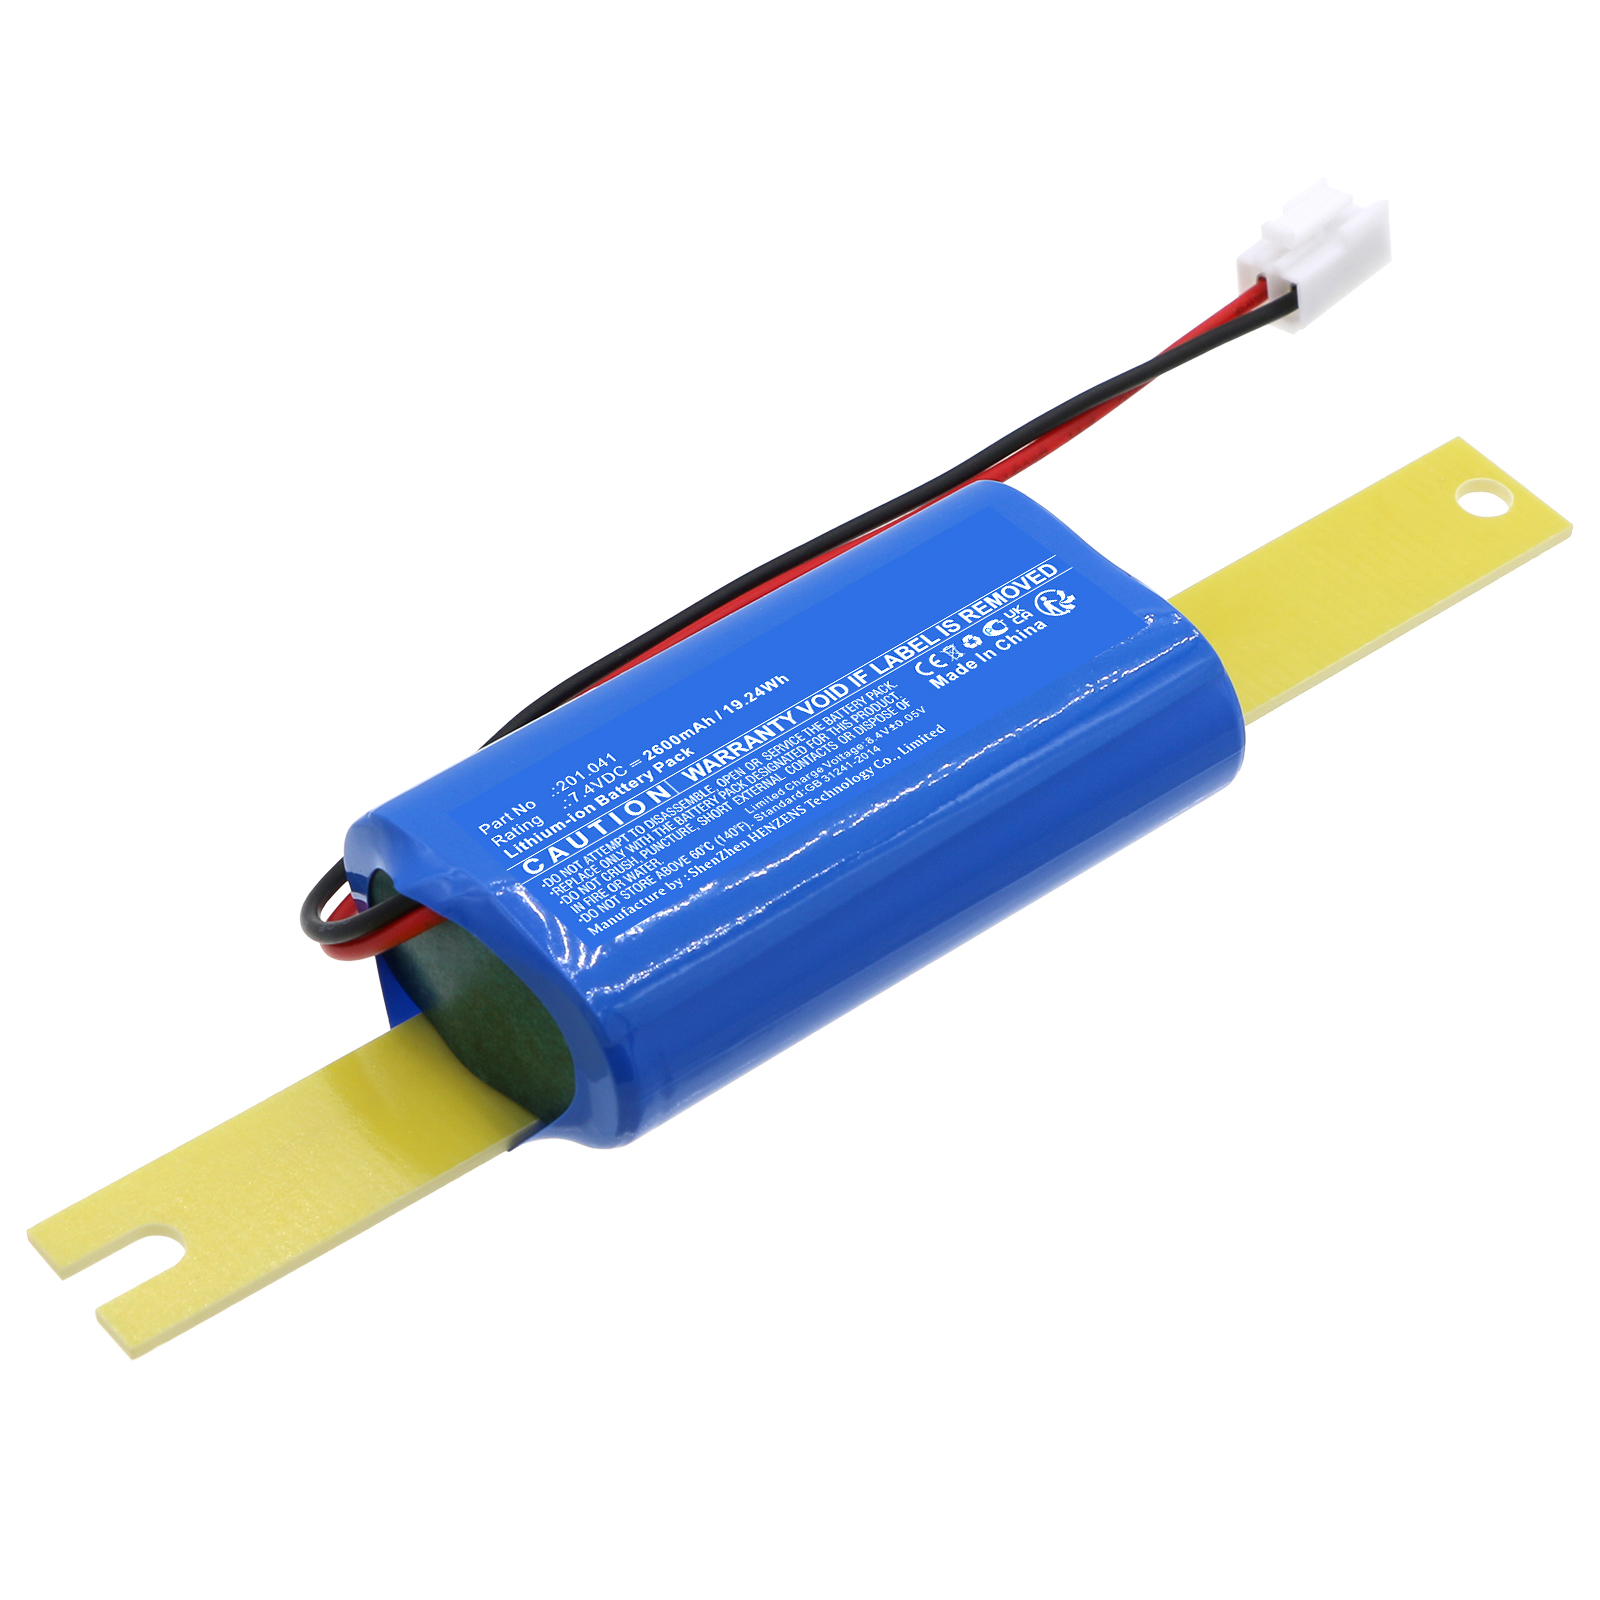 Synergy Digital Emergency Lighting Battery, Compatible with WSD 201.041 Emergency Lighting Battery (Li-ion, 7.4V, 2600mAh)